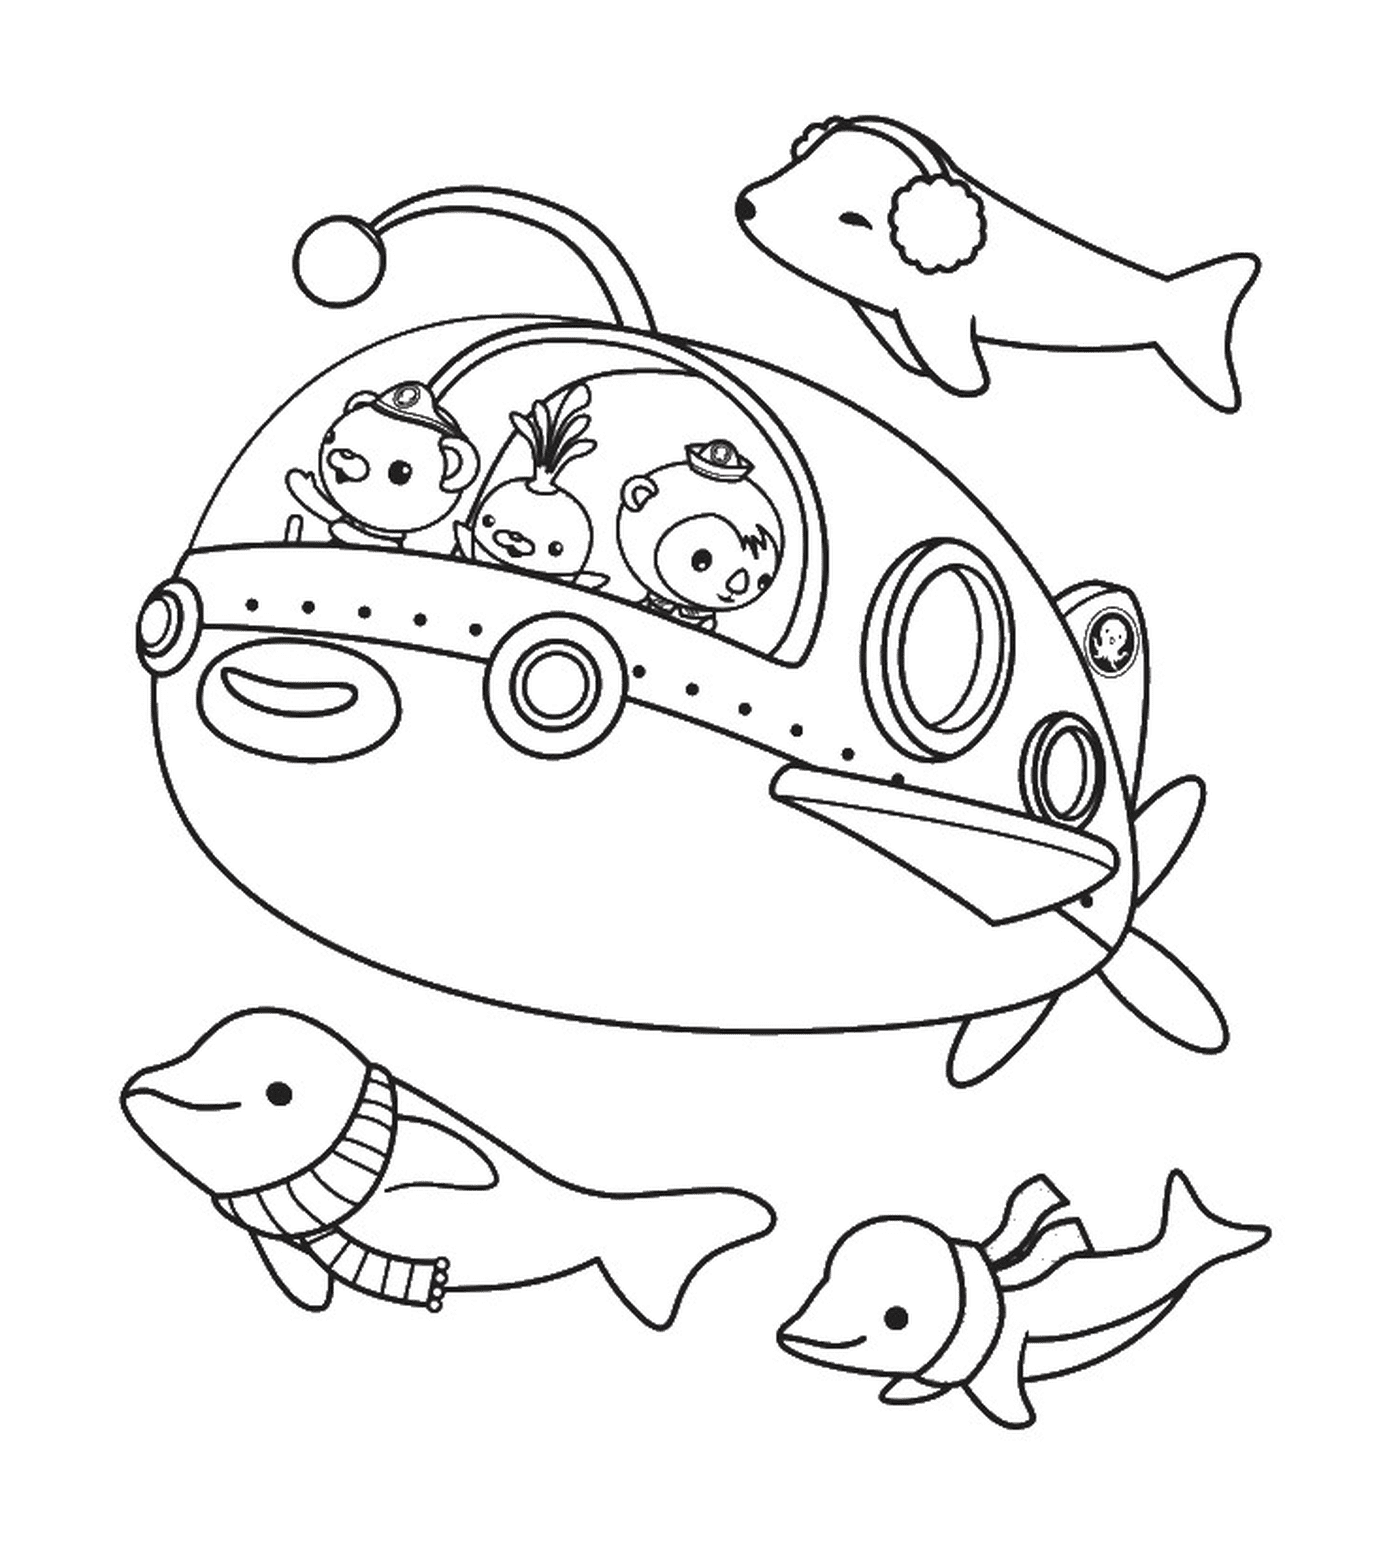  Октонавты отправляются в подводное приключение, в океаническую жизнь 